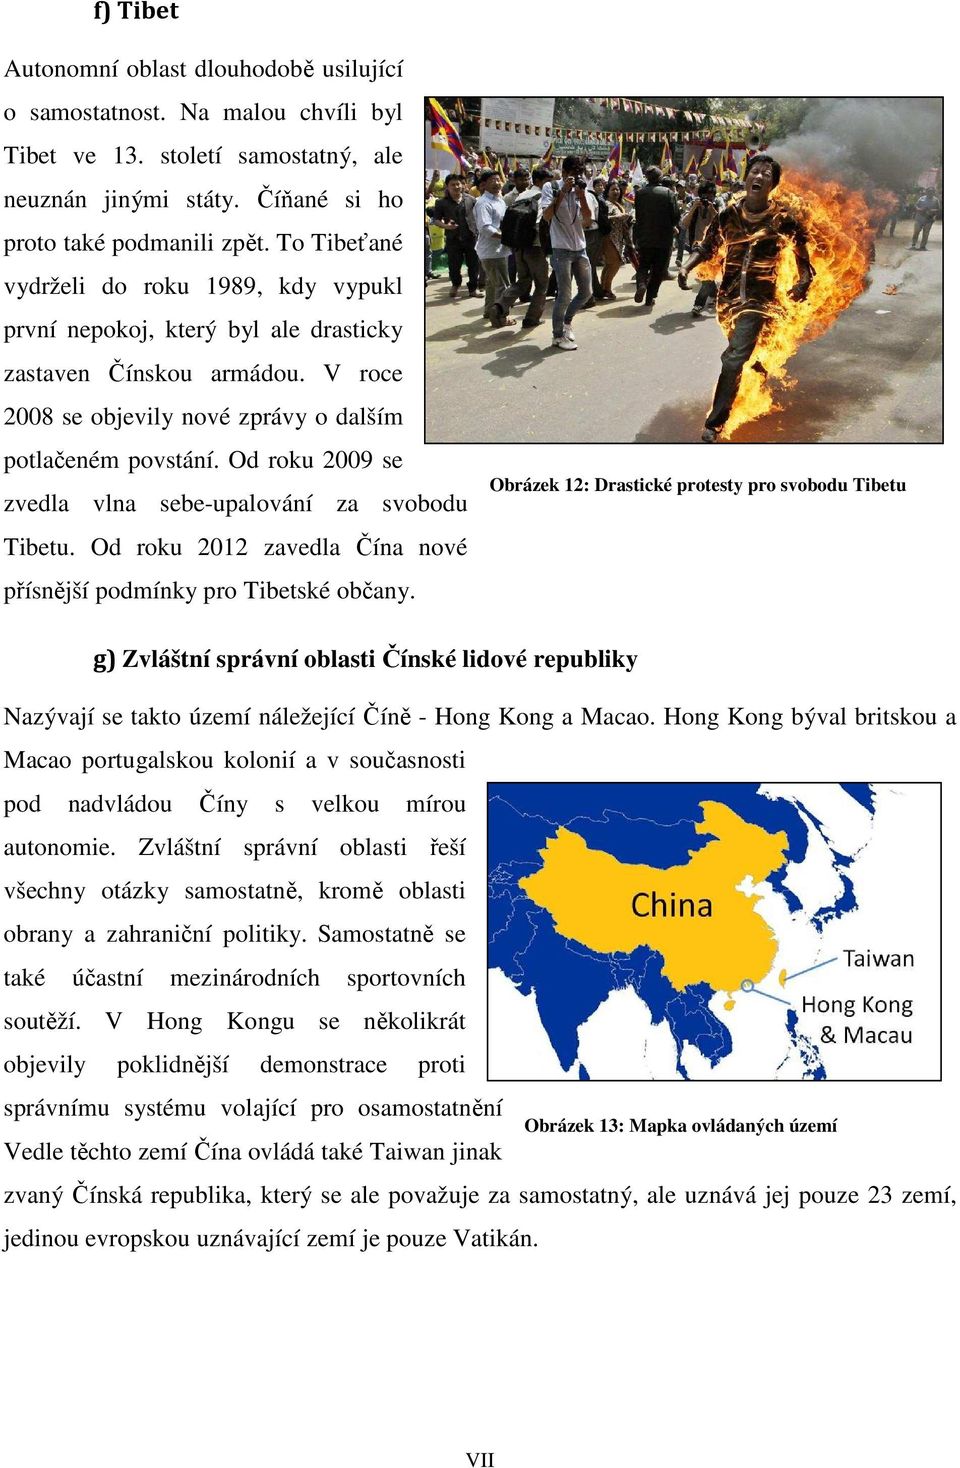 Od roku 2009 se zvedla vlna sebe-upalování za svobodu Tibetu. Od roku 2012 zavedla Čína nové přísnější podmínky pro Tibetské občany.